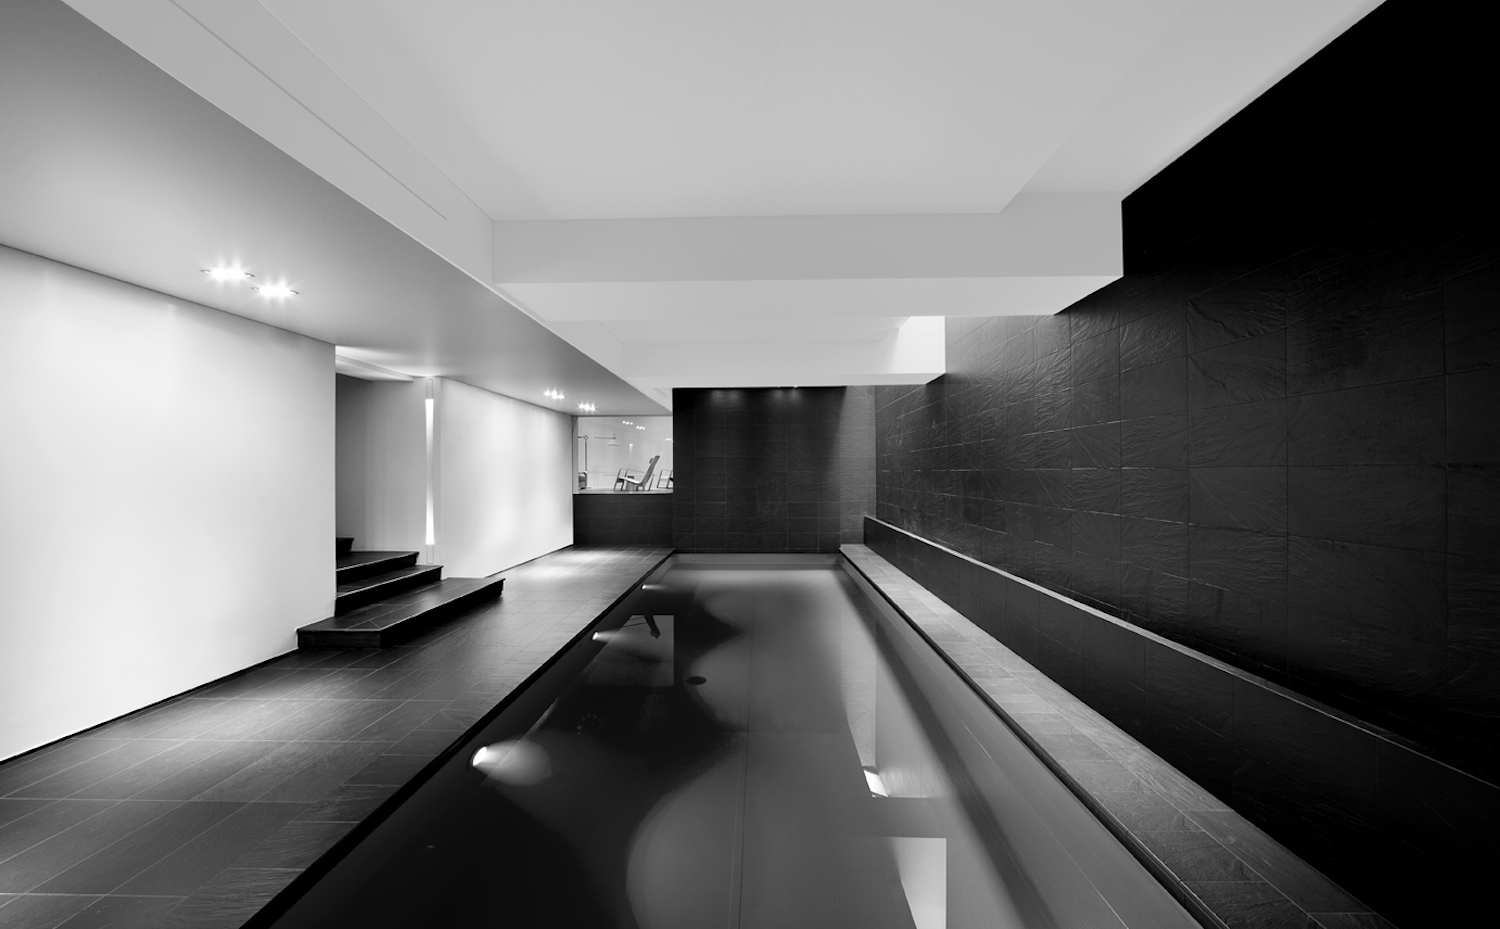 TAG66. La vivienda dispone de su propia piscina interior, iluminada en parte por pequeños lucernarios que aportan luz natural